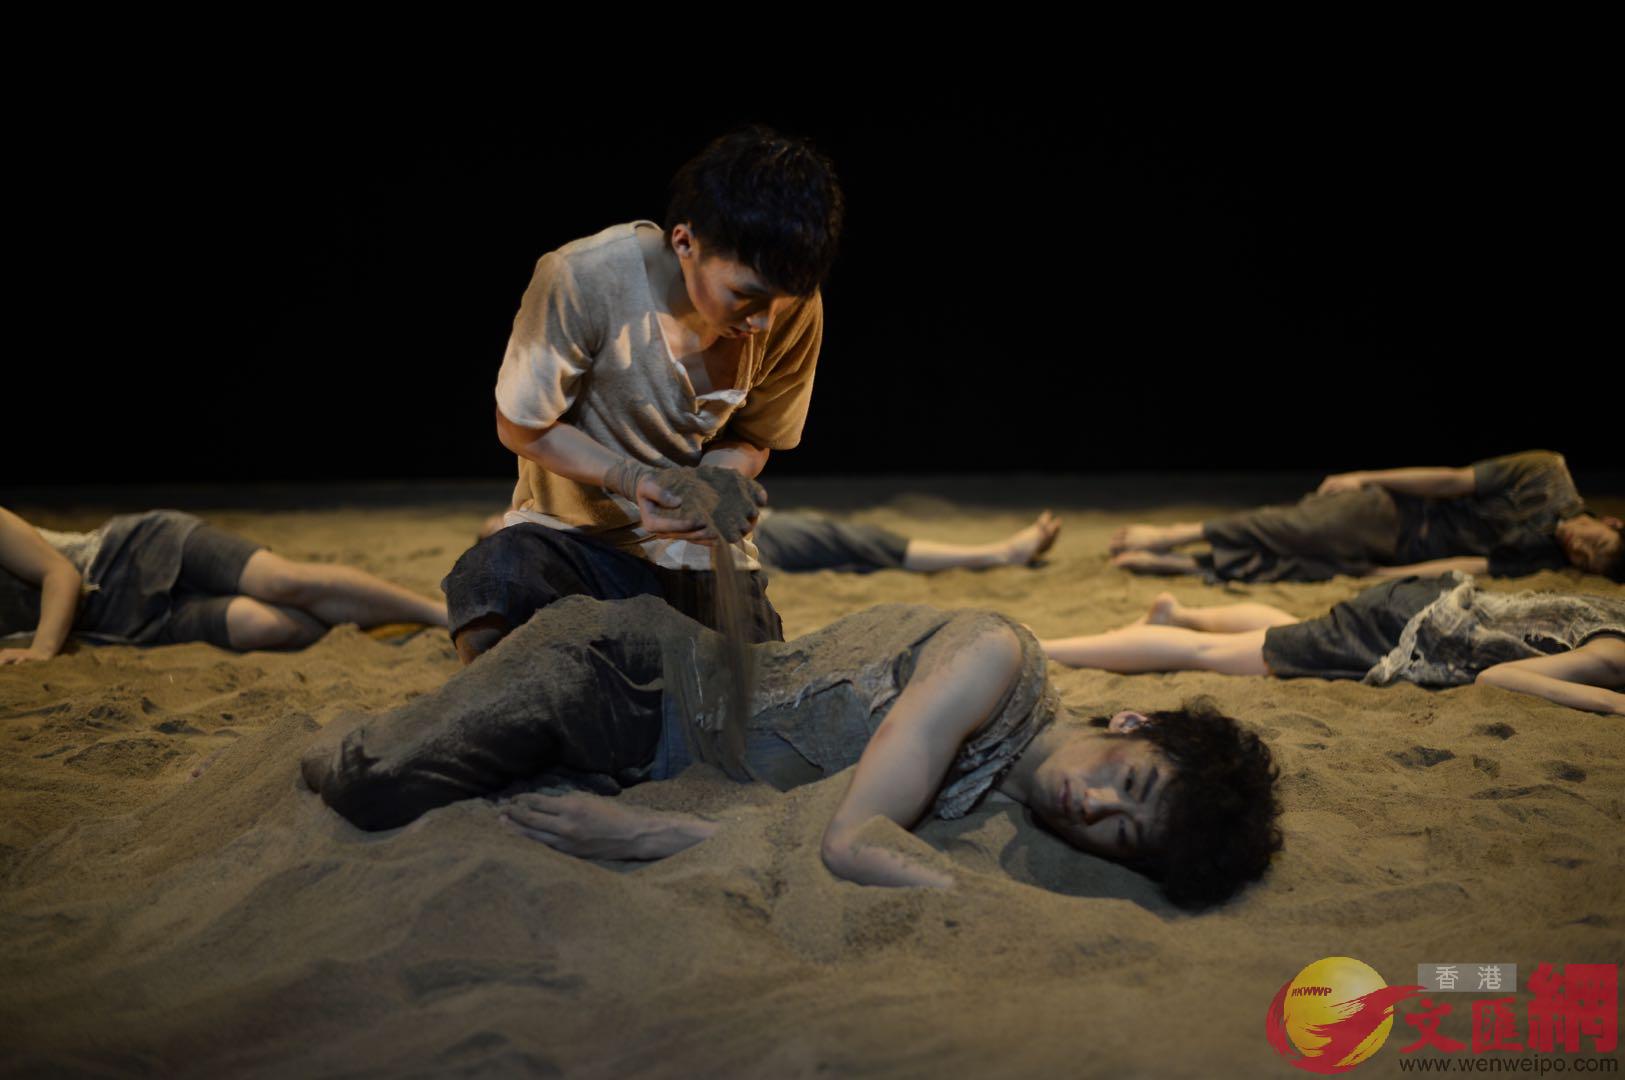 舞蹈演員在9噸沙子中起舞 北京傳真